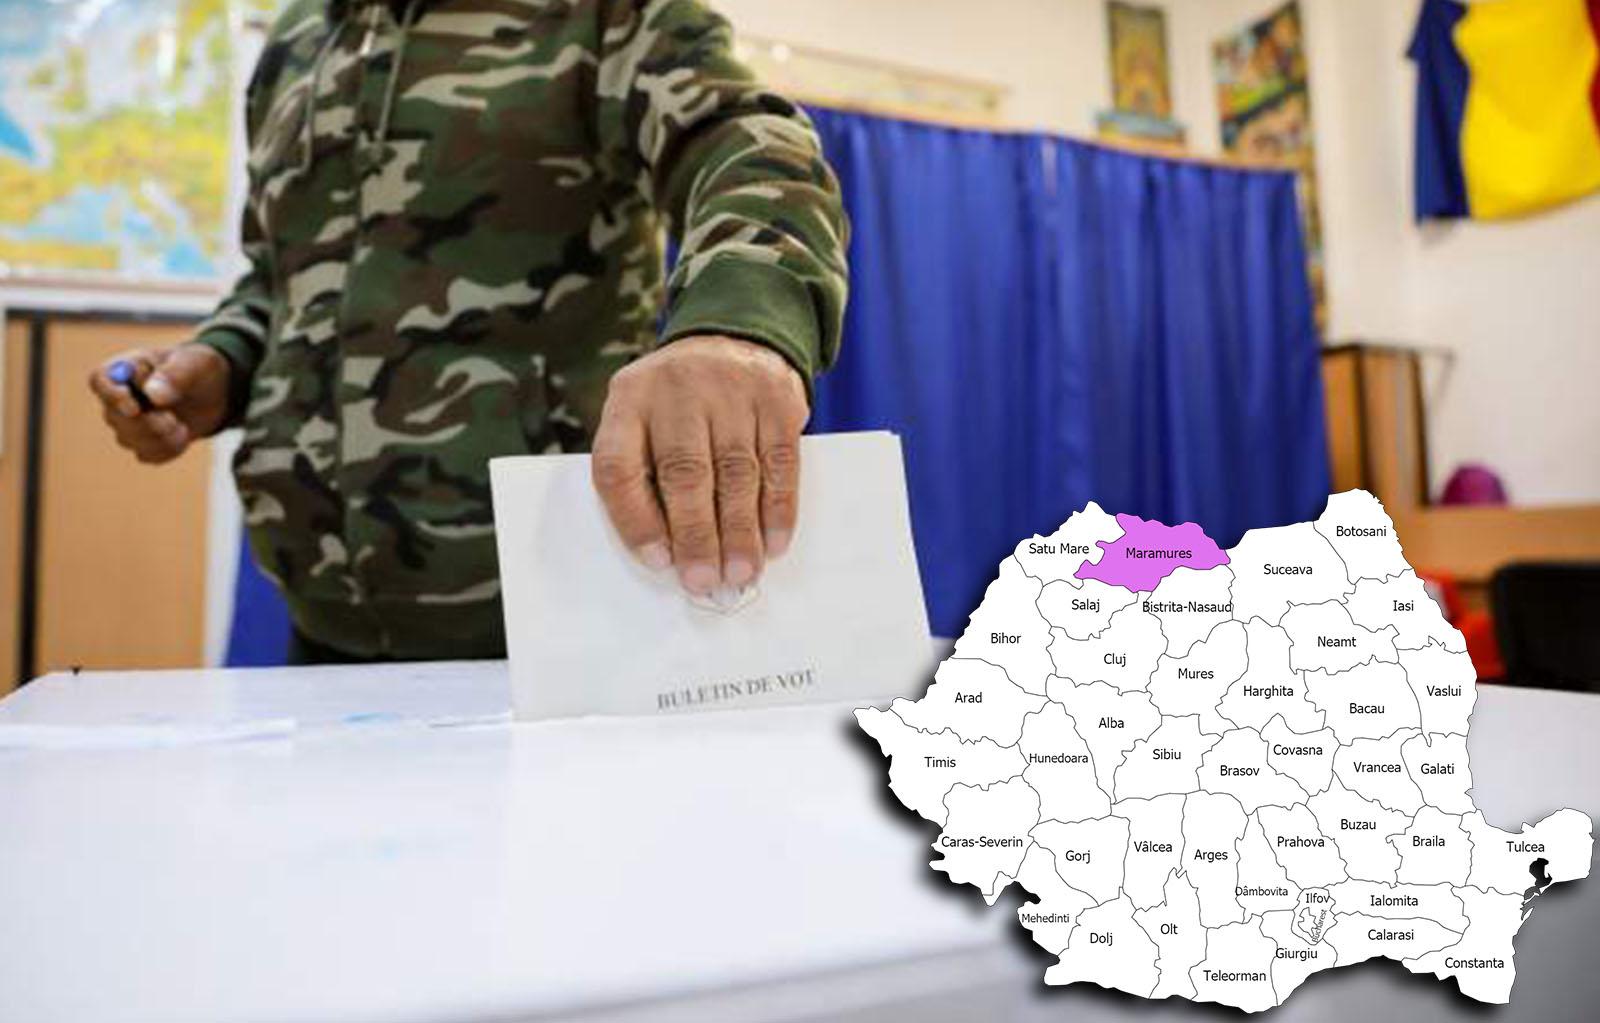 Rezultate alegeri parlamentare 2020 în județul Maramureș. Cine câștigă alegerile pentru Senat și Camera Deputaților